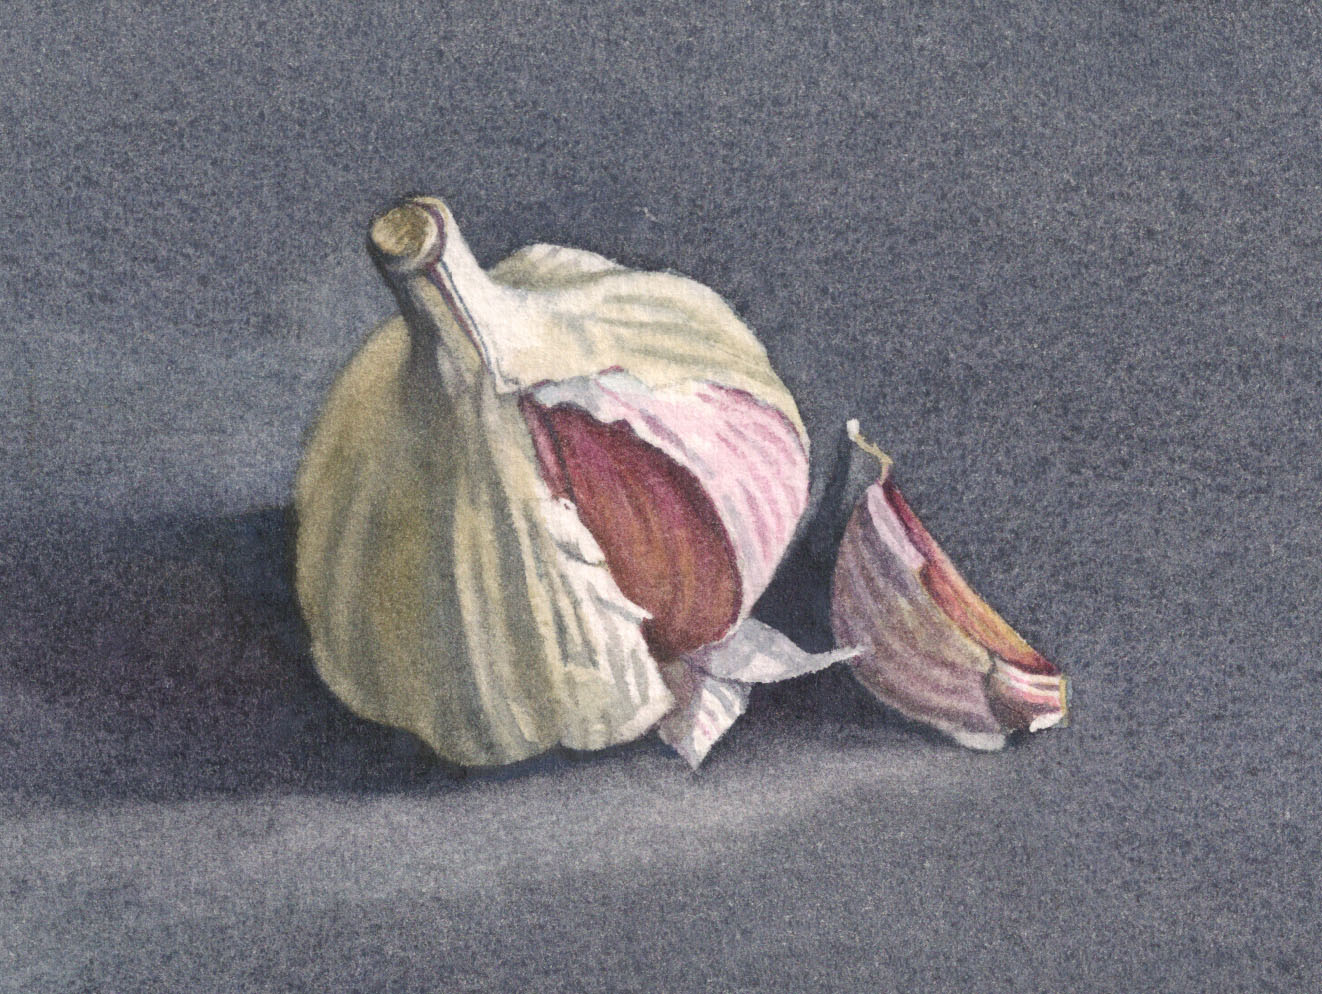 Garlic, gicleé print 6.8 x 9cm